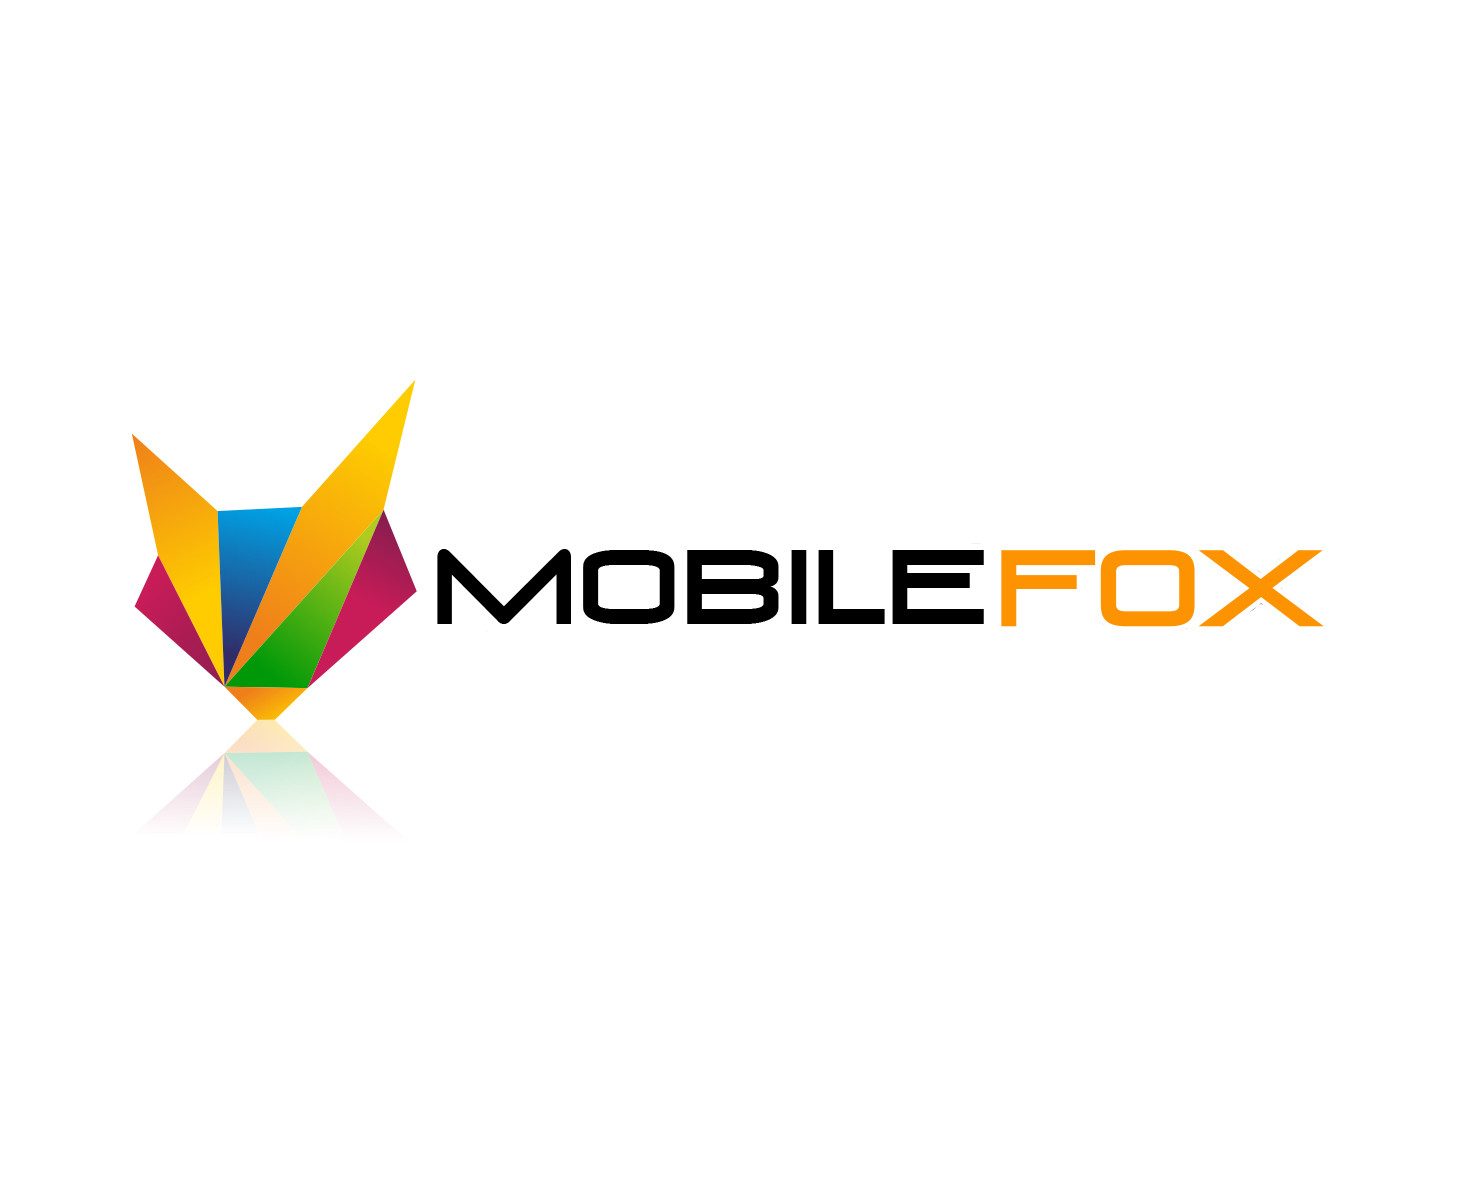 Mobilefox